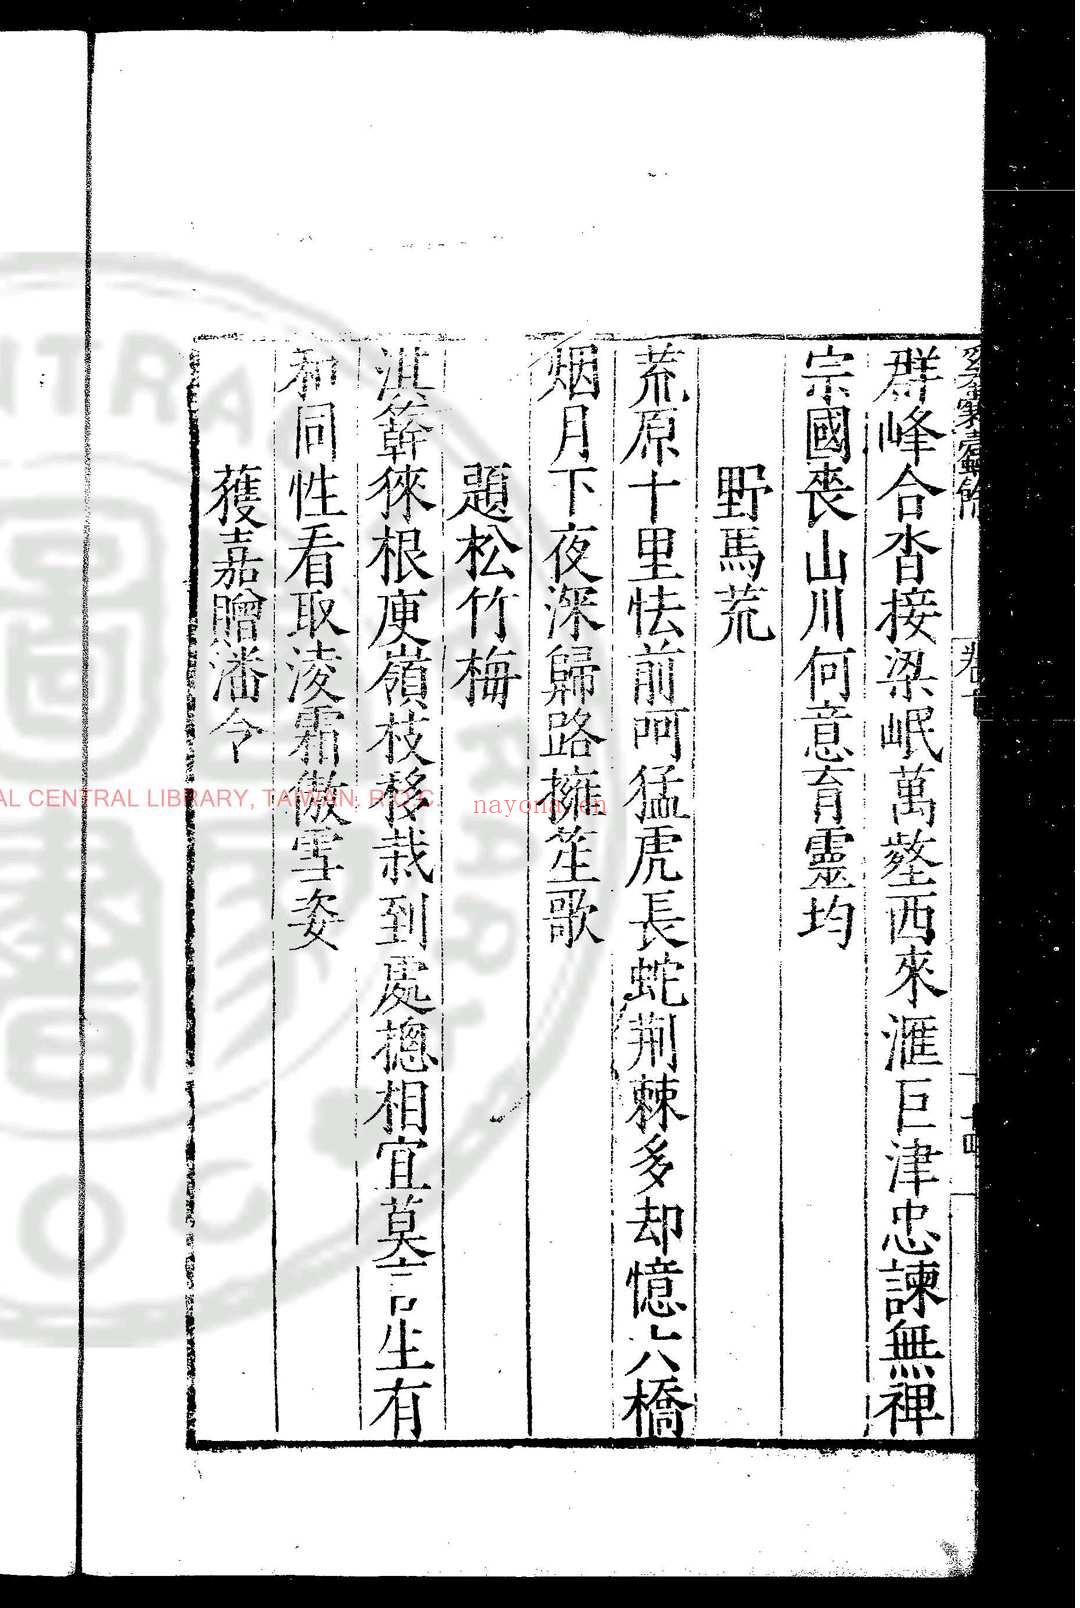 奚囊蠹余 (明)张瀚撰 明隆庆三年(1569)张佳胤等广西刊本